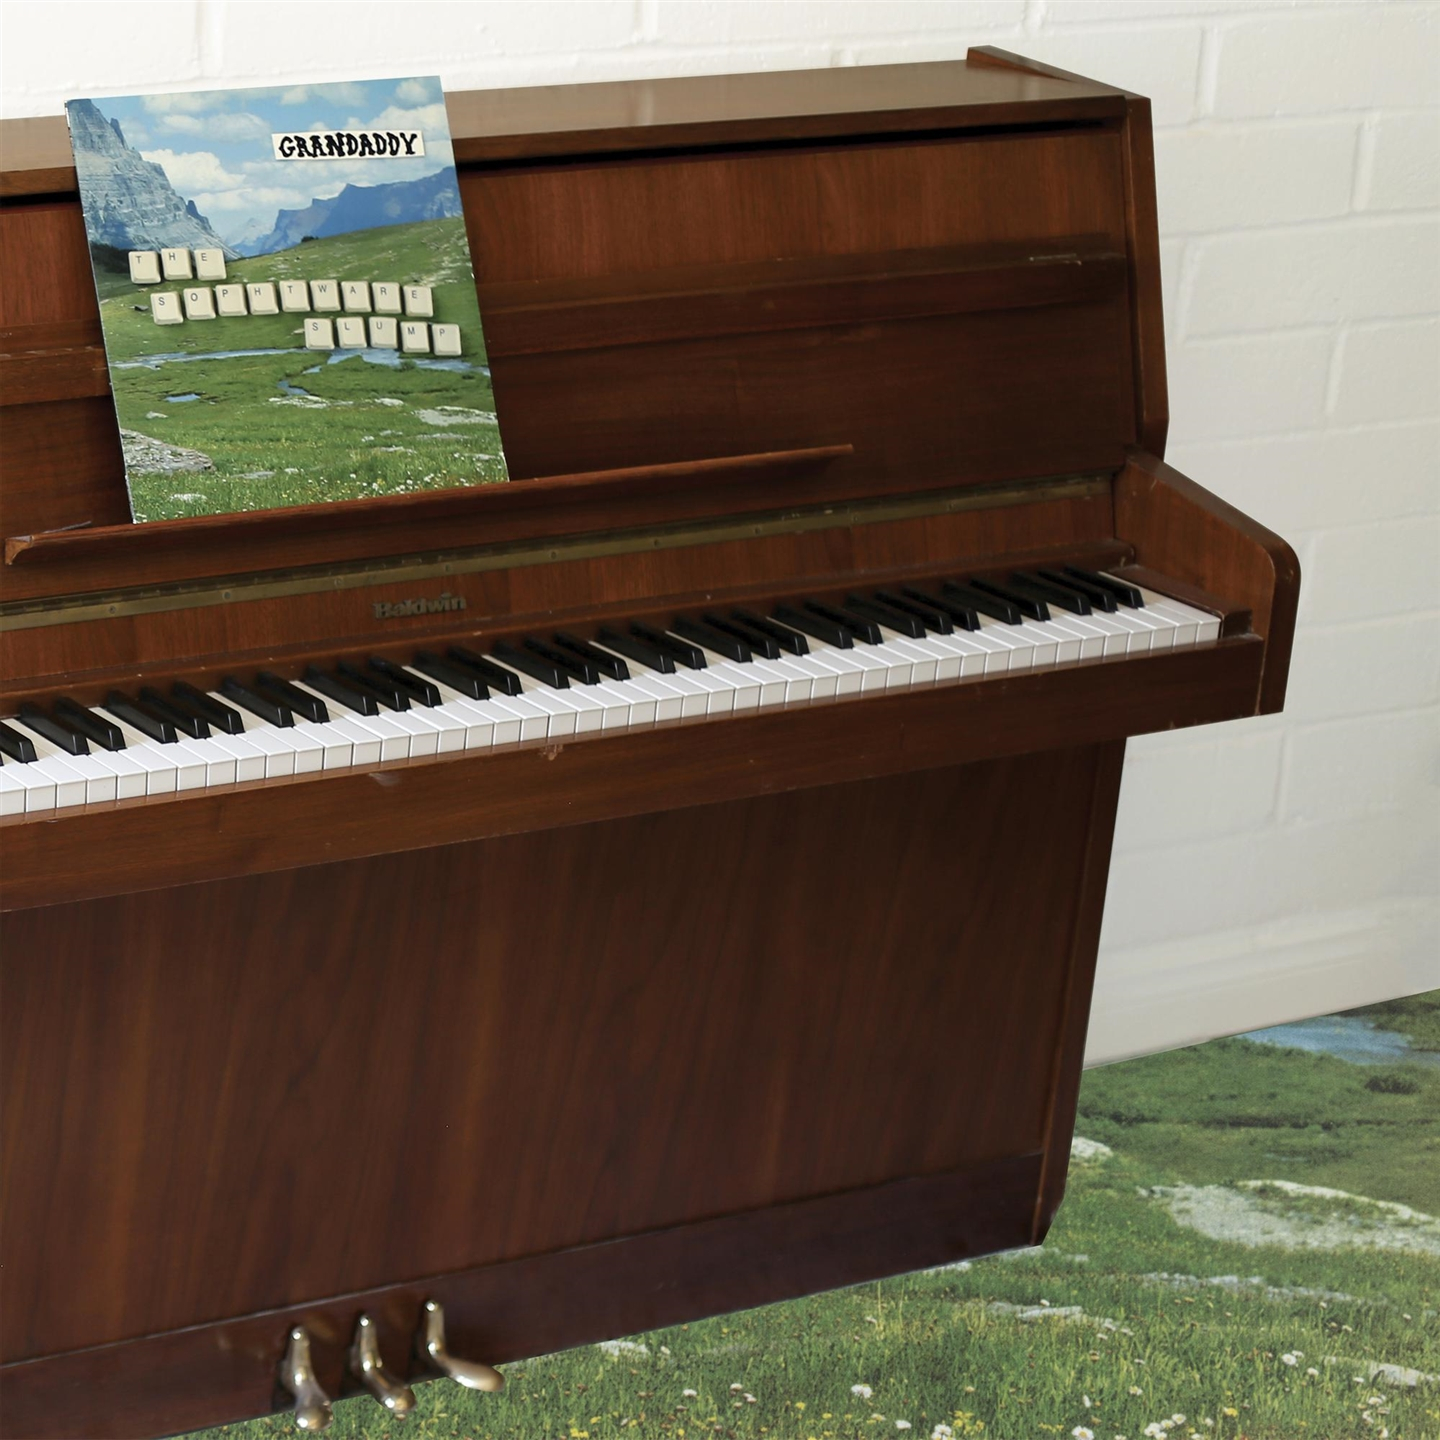 Grandaddy - The Sophtware Slump On A Wooden Piano [Lp] - Foto 1 di 1